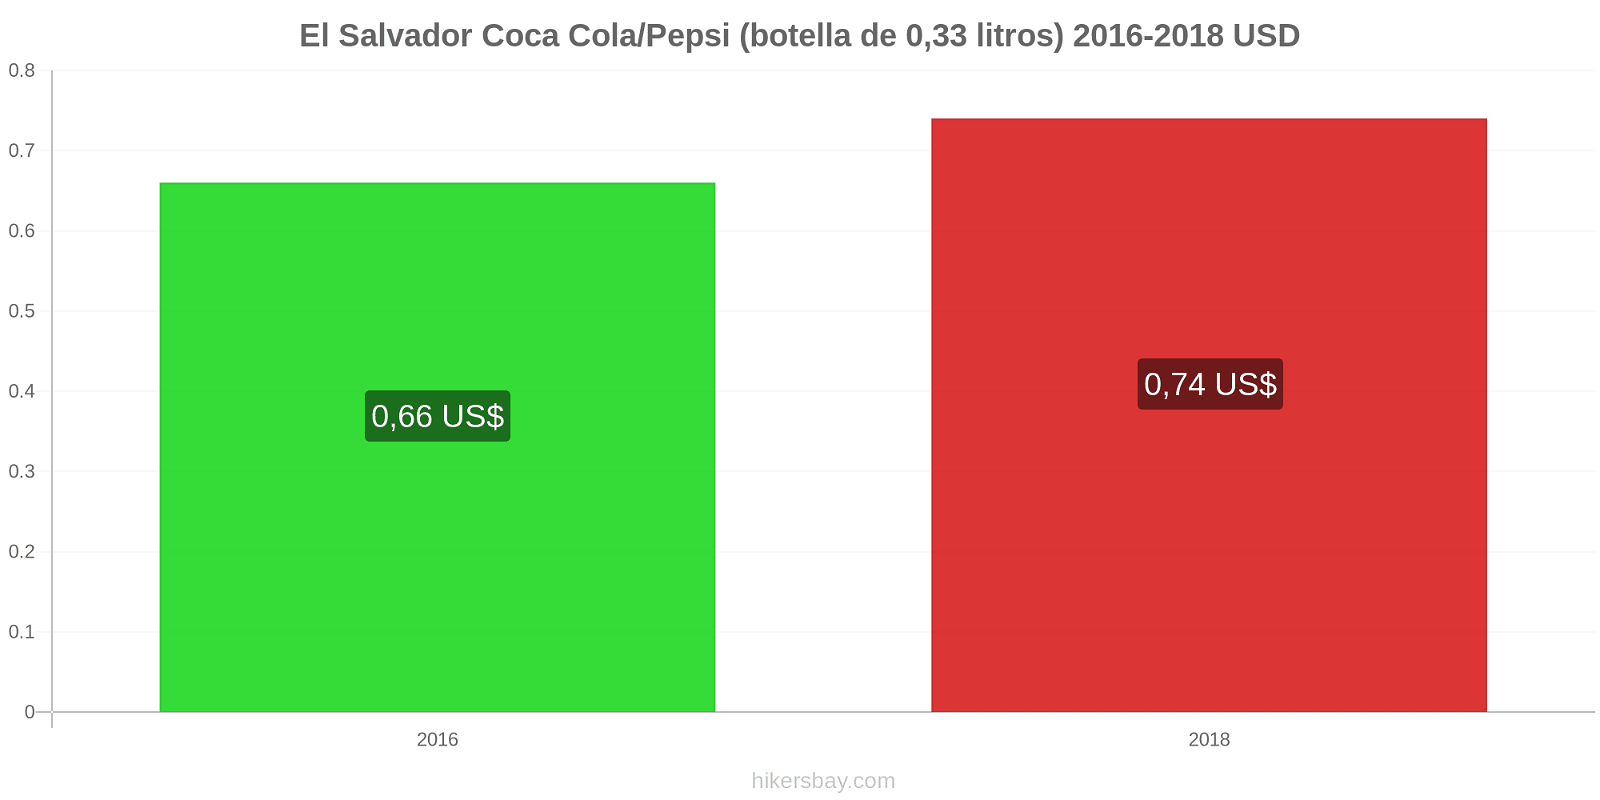 El Salvador cambios de precios Coca-Cola/Pepsi (botella de 0.33 litros) hikersbay.com